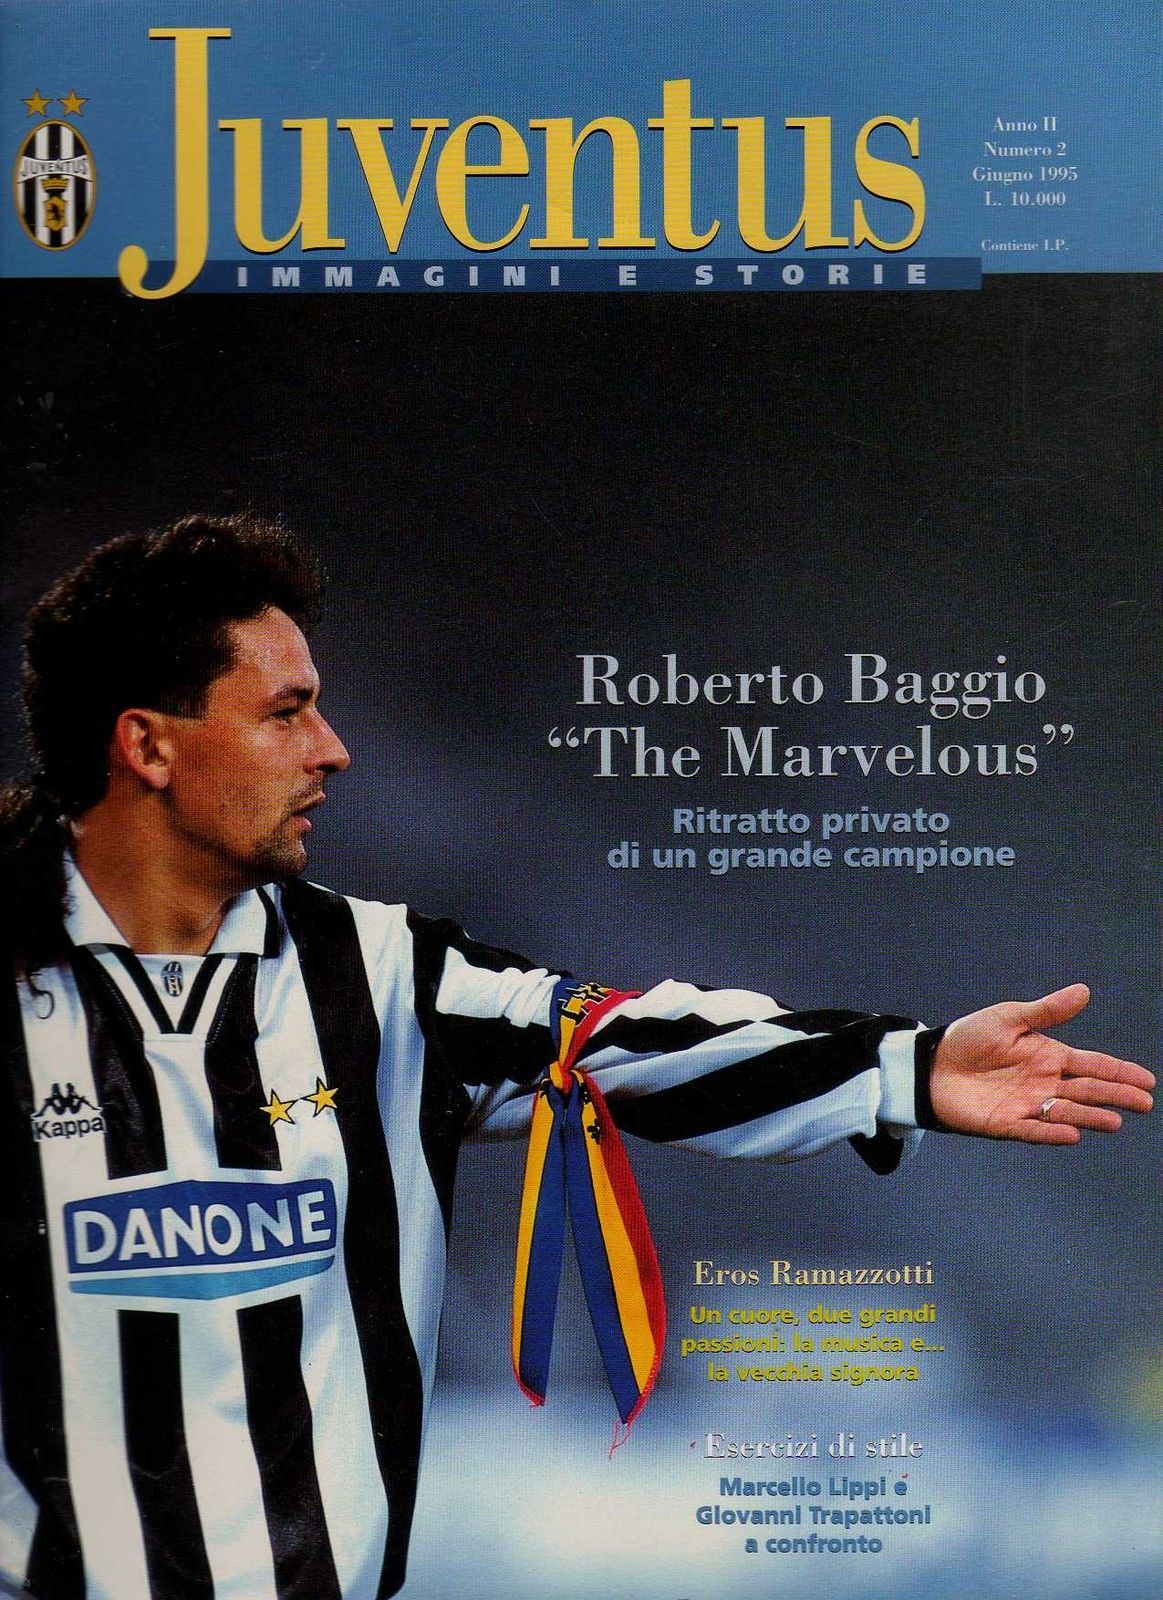 Roberto Baggio - Страница 6 Tumblr_nhnqidx9Jp1r90nv2o1_1280